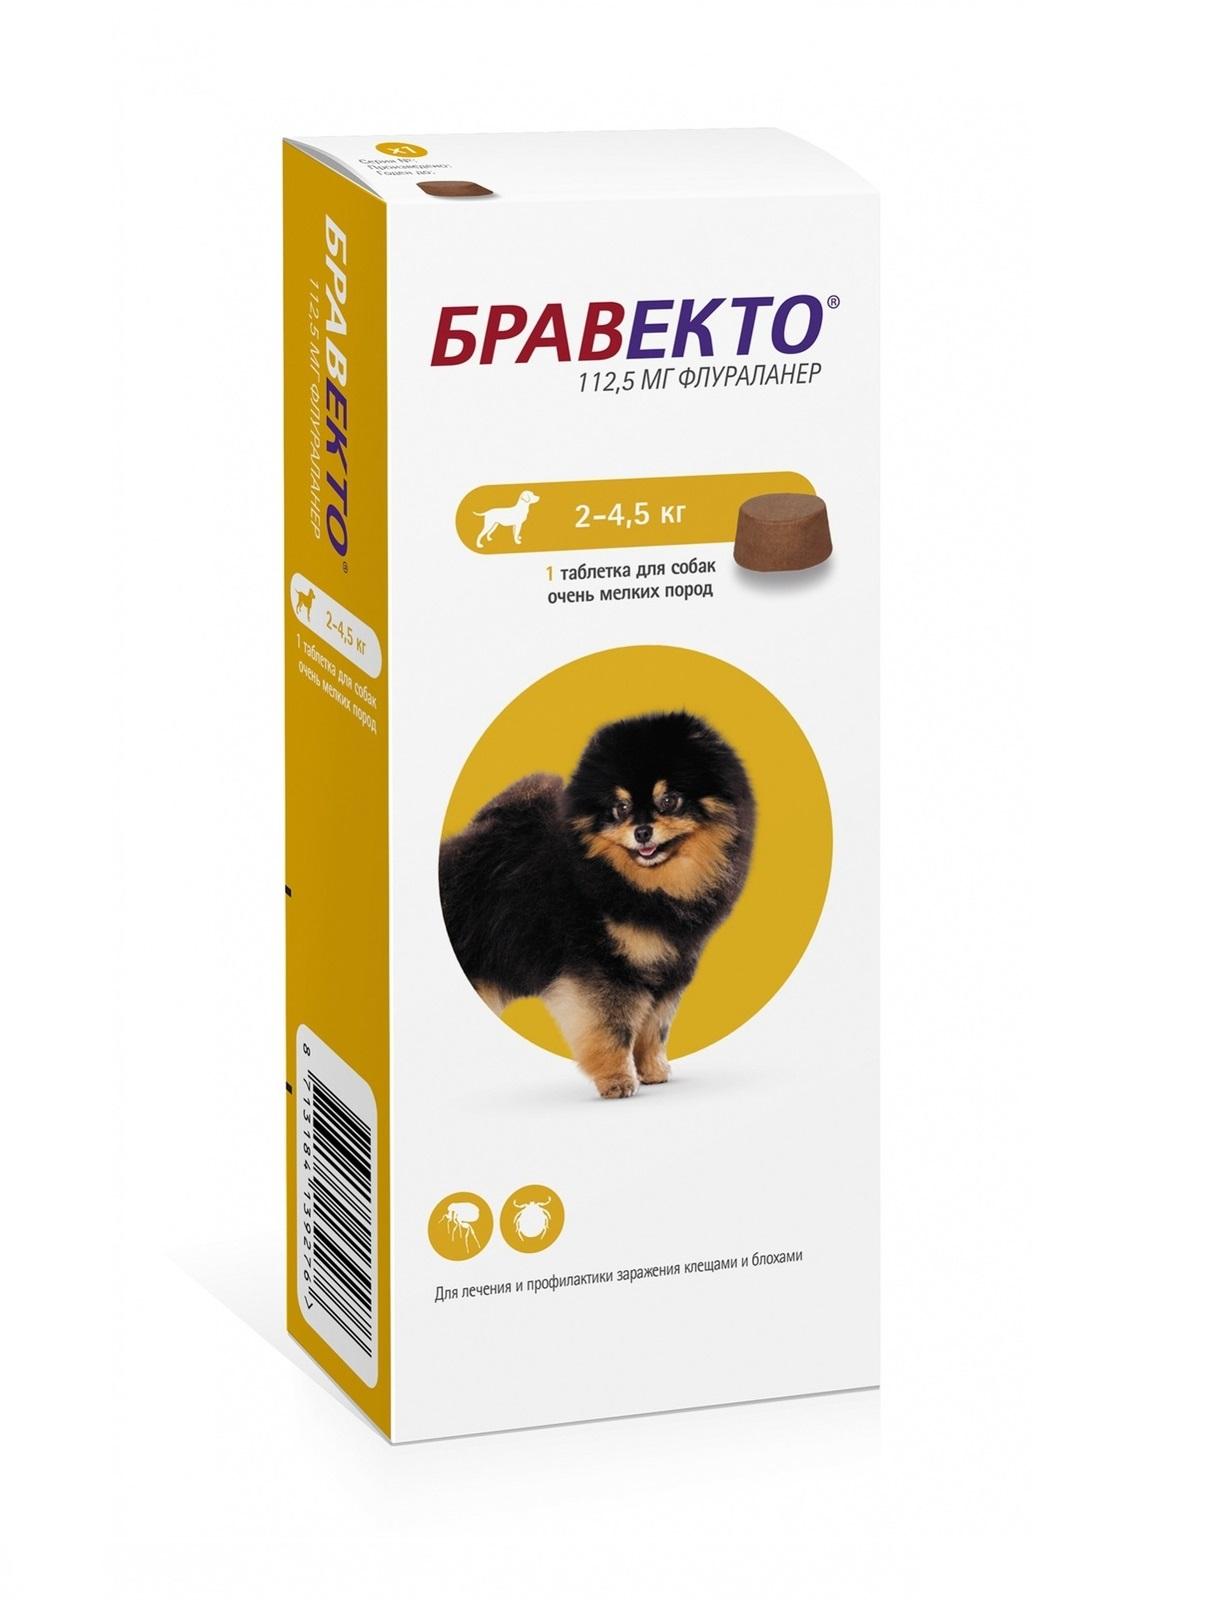 Бравекто жевательная таблетка от блох и клещей для собак весом от 2 до 4,5 кг - 112,5 мг